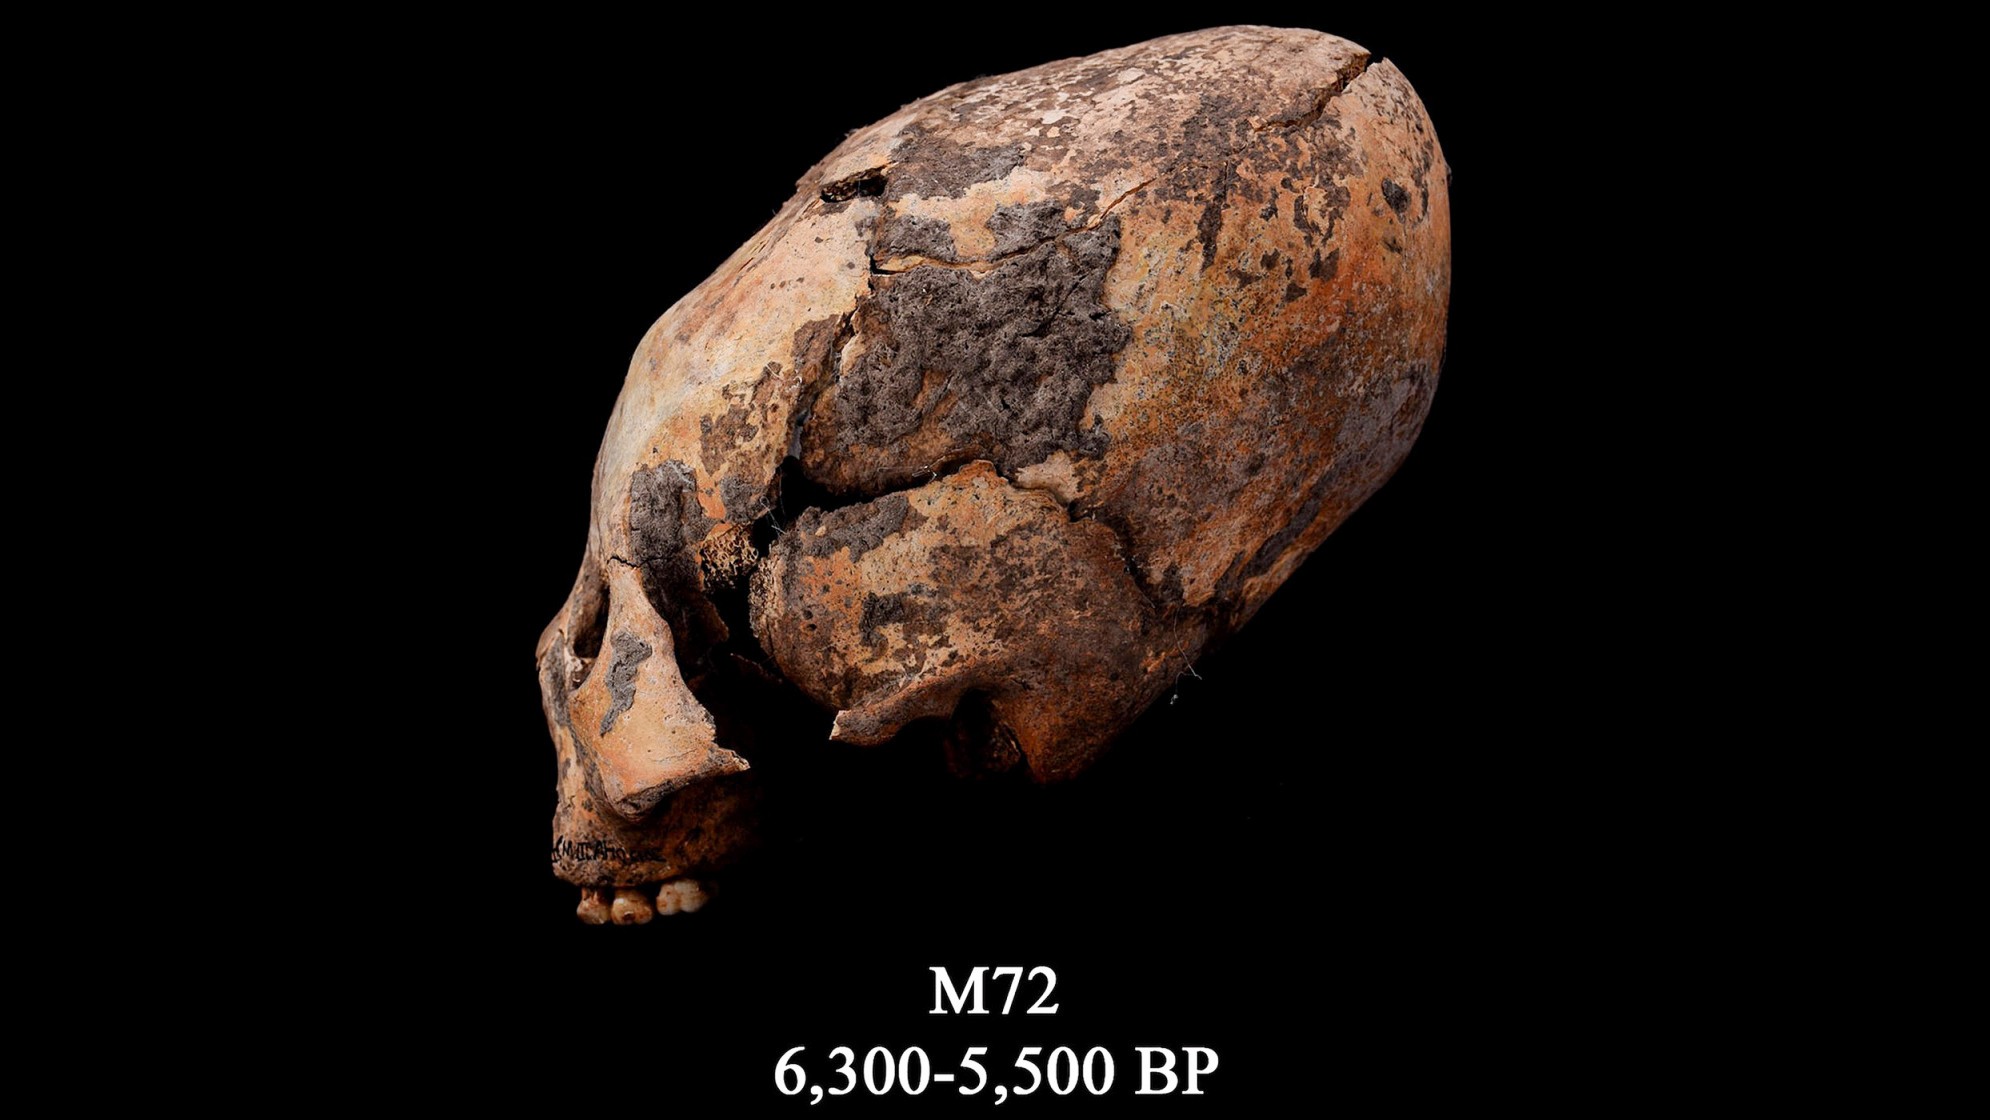 M72 olarak bilinen kafatası. Bu yeniden şekillendirilmiş insan kafatası kuzeydoğu Çin'de bulundu ve kasıtlı olarak değiştirildi.